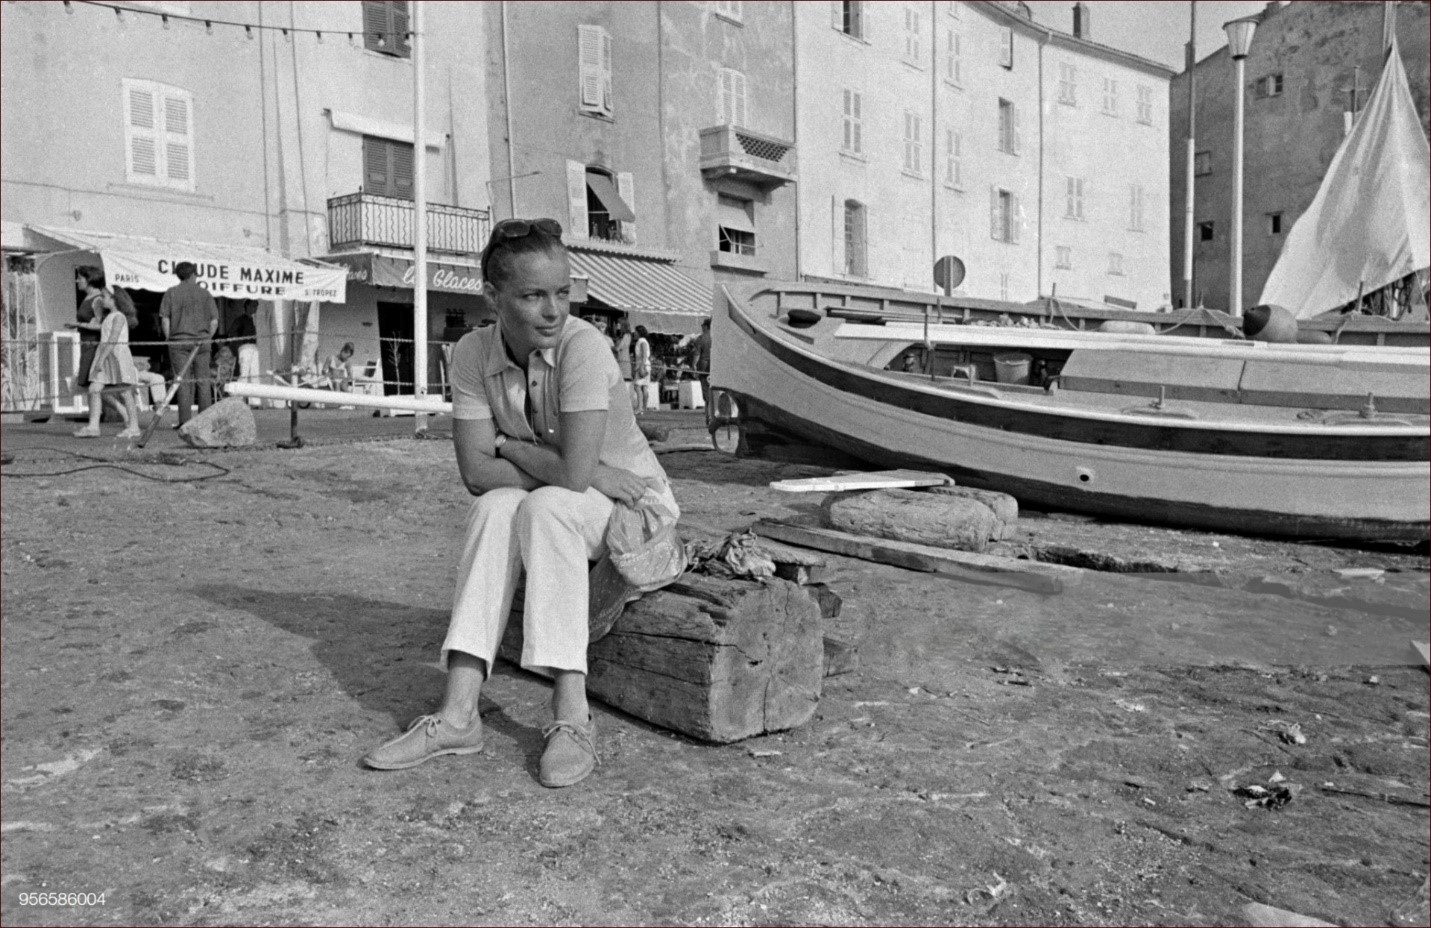 Romy Schneider in Saint Tropez in 1968.